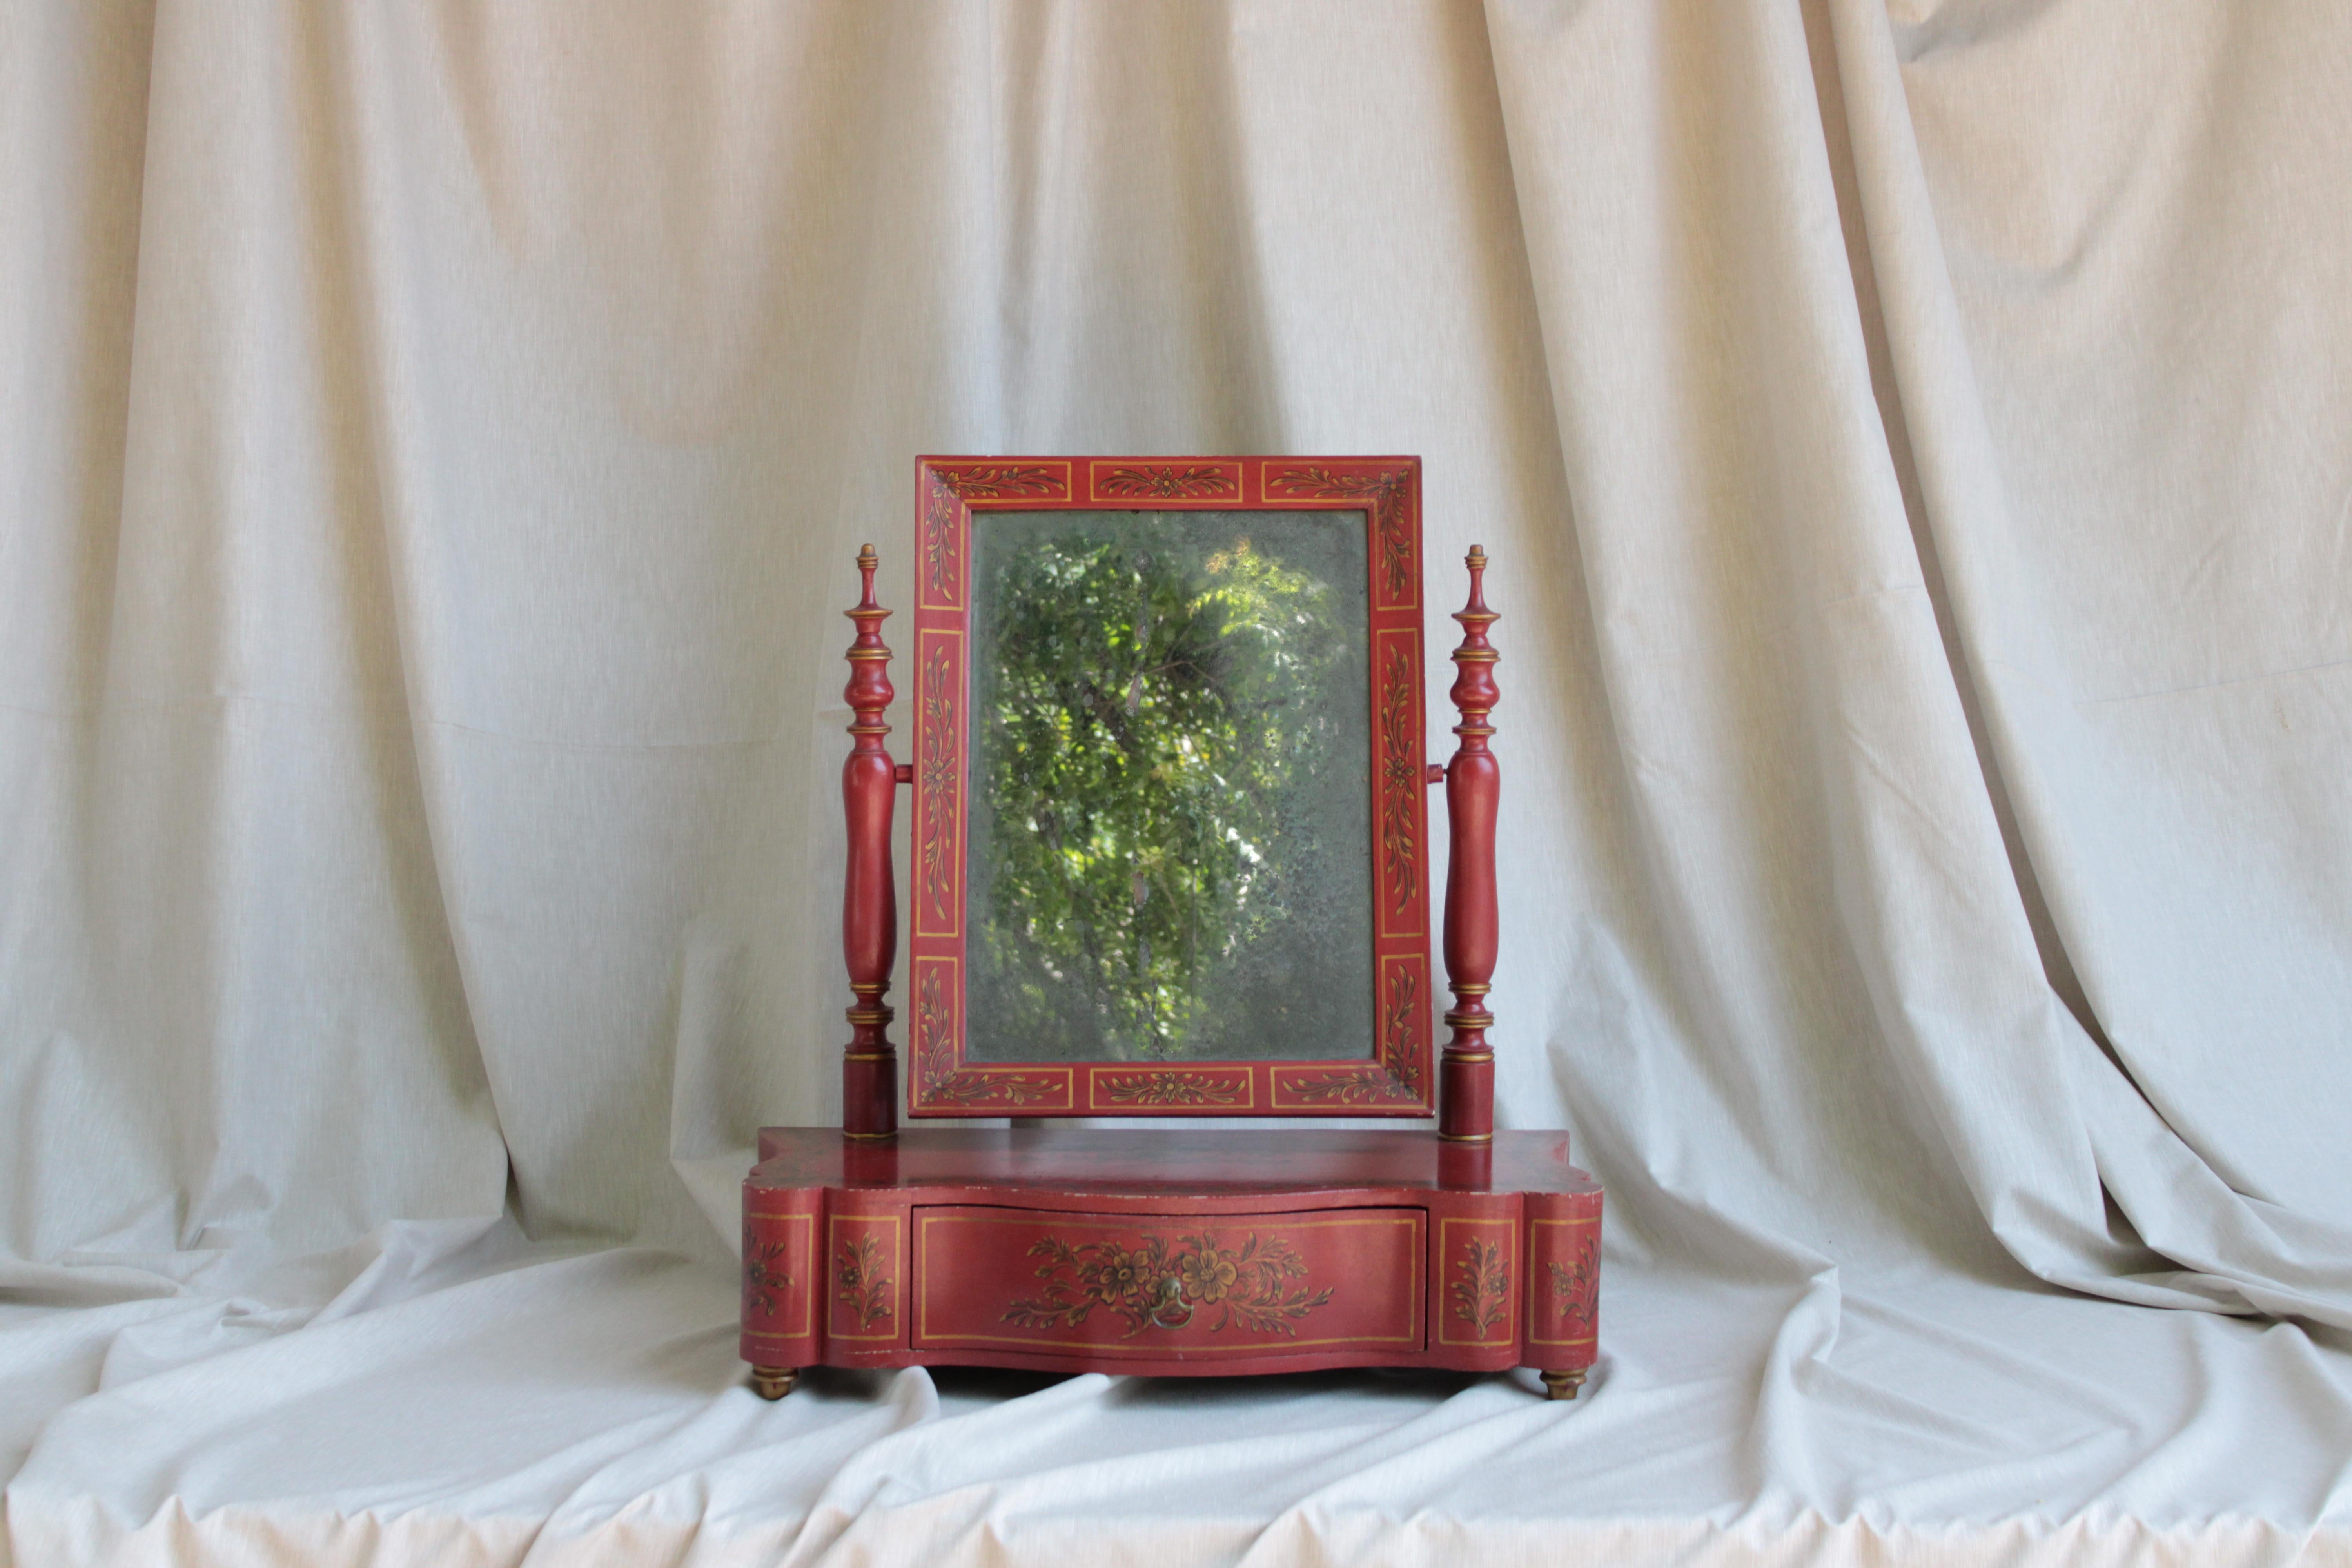 Tischspiegel im Stil von George III., rot und gold lackiert, Originalspiegel.

Ein Tischspiegel im George-III-Stil, der während der Herrschaft von König George III. von Großbritannien, die von 1760 bis 1820 dauerte, beliebt war. Diese Spiegel weisen